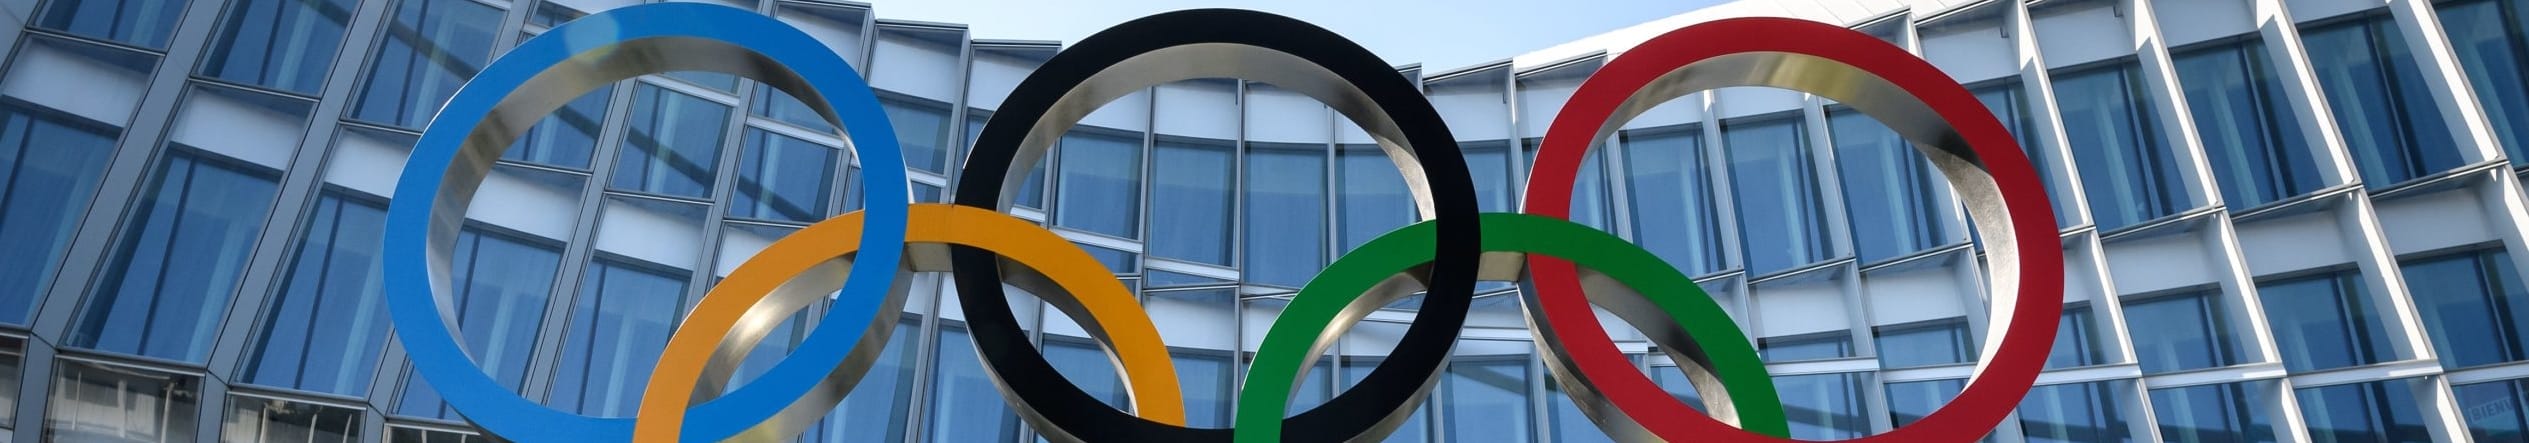 Κορονοϊός: Αναβλήθηκαν οι Ολυμπιακοί Αγώνες